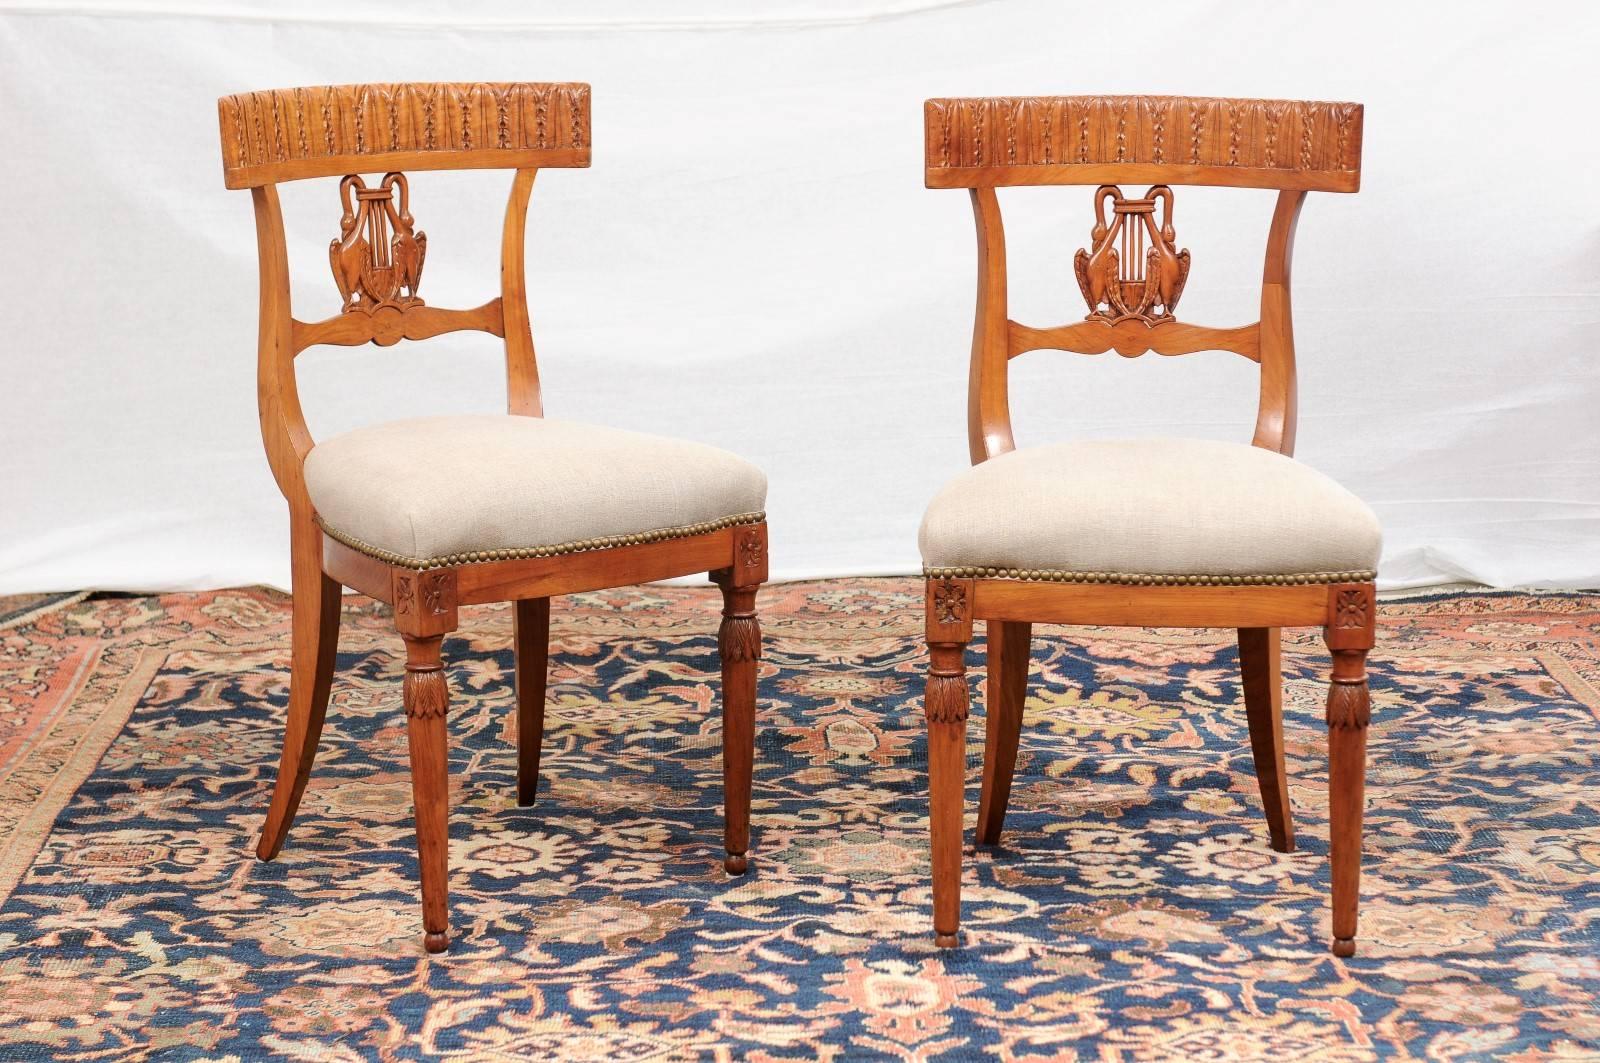 Dieses Paar italienischer Beistellstühle aus Nussbaumholz im neoklassizistischen Stil aus der Mitte des 19. Jahrhunderts zeichnet sich durch leicht konkave, durchbrochene Rückenlehnen aus, die sich perfekt an den Körper des Sitzenden anpassen. An